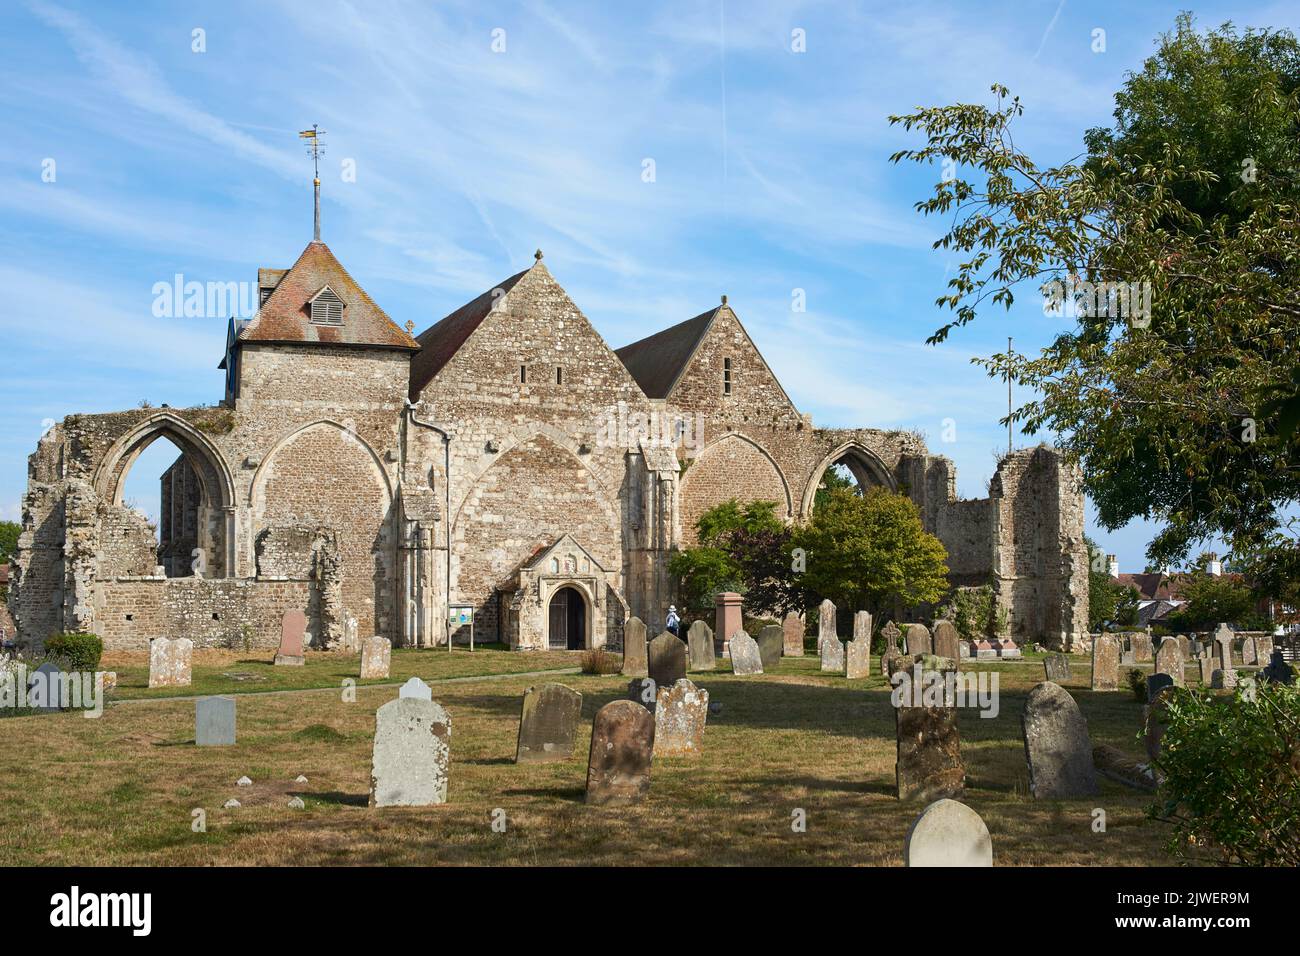 L'église Saint-Thomas-le-Martyr, datant du 13th siècle, à Winchelsea, dans l'est du Sussex, dans le sud-est de l'Angleterre Banque D'Images